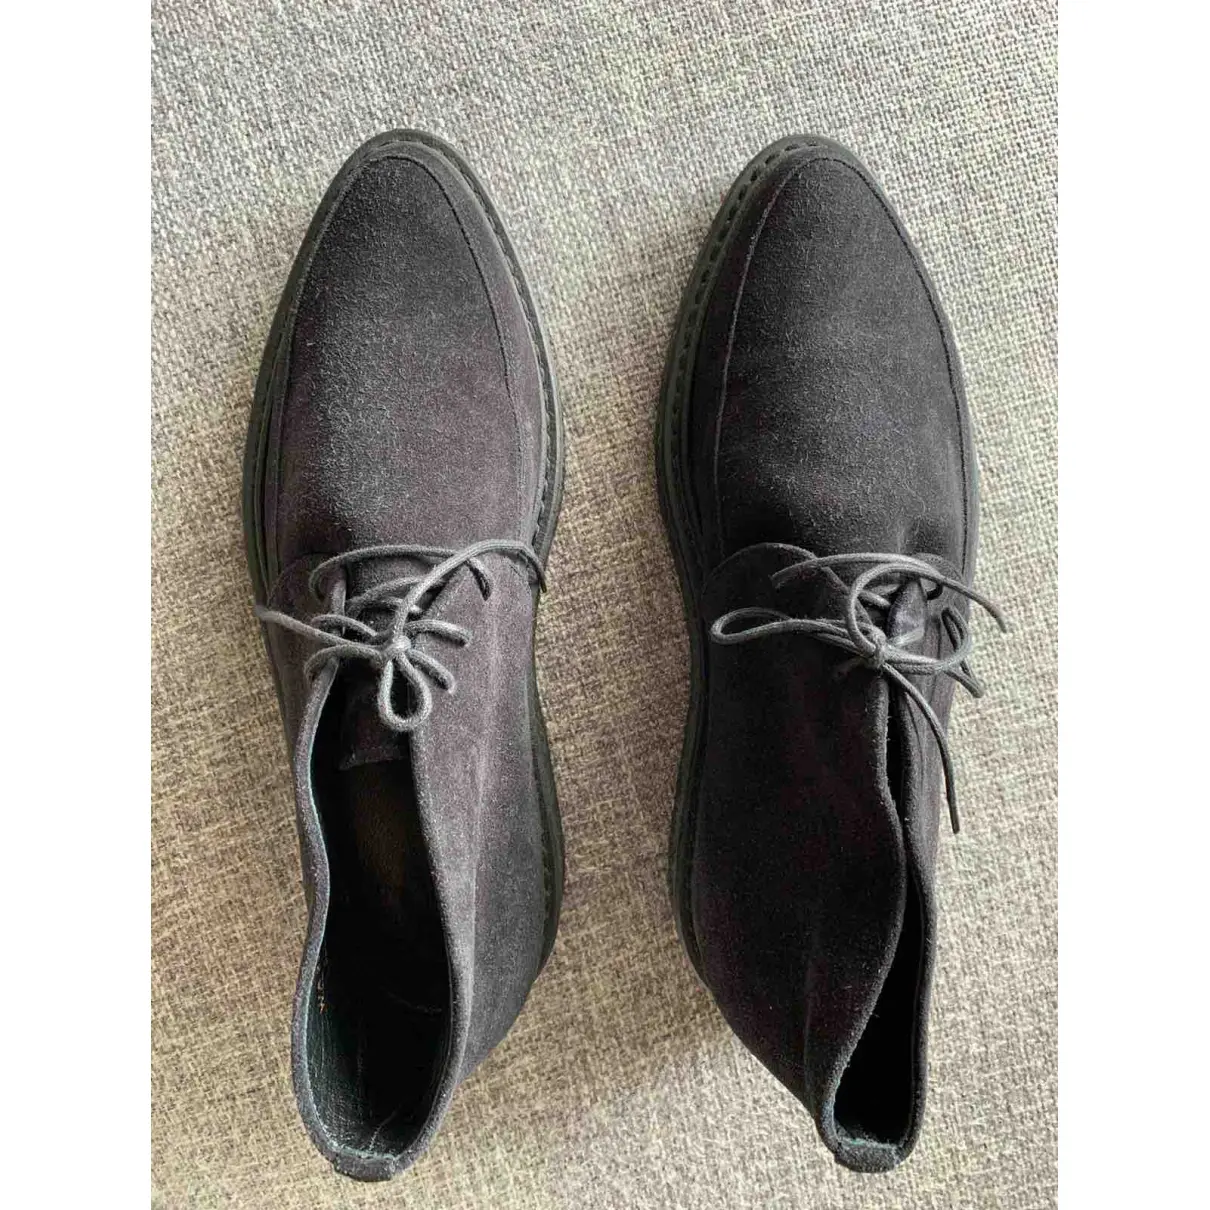 Buy Saint Laurent Black Suede Boots online